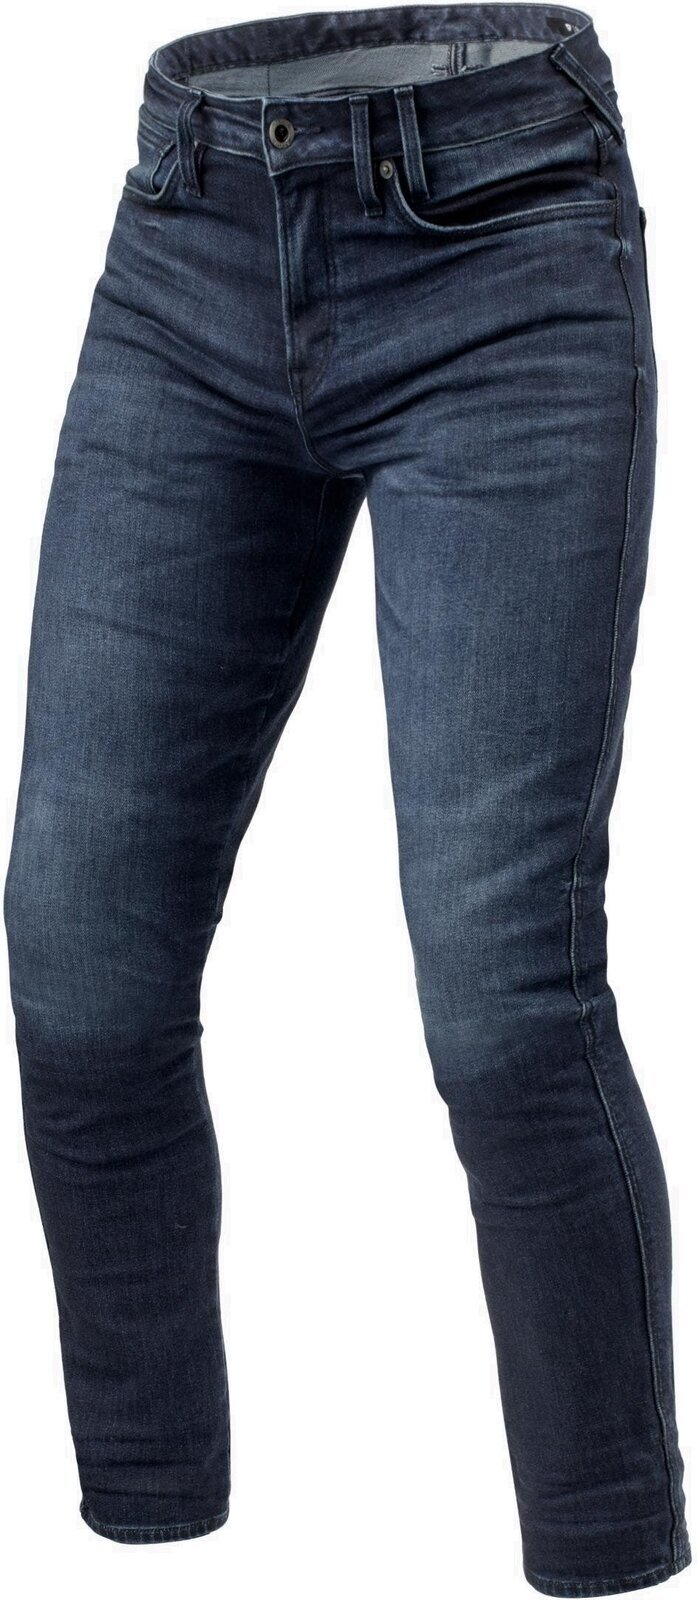 Motoristične jeans hlače Rev'it! Jeans Carlin SK Dark Blue 34/38 Motoristične jeans hlače